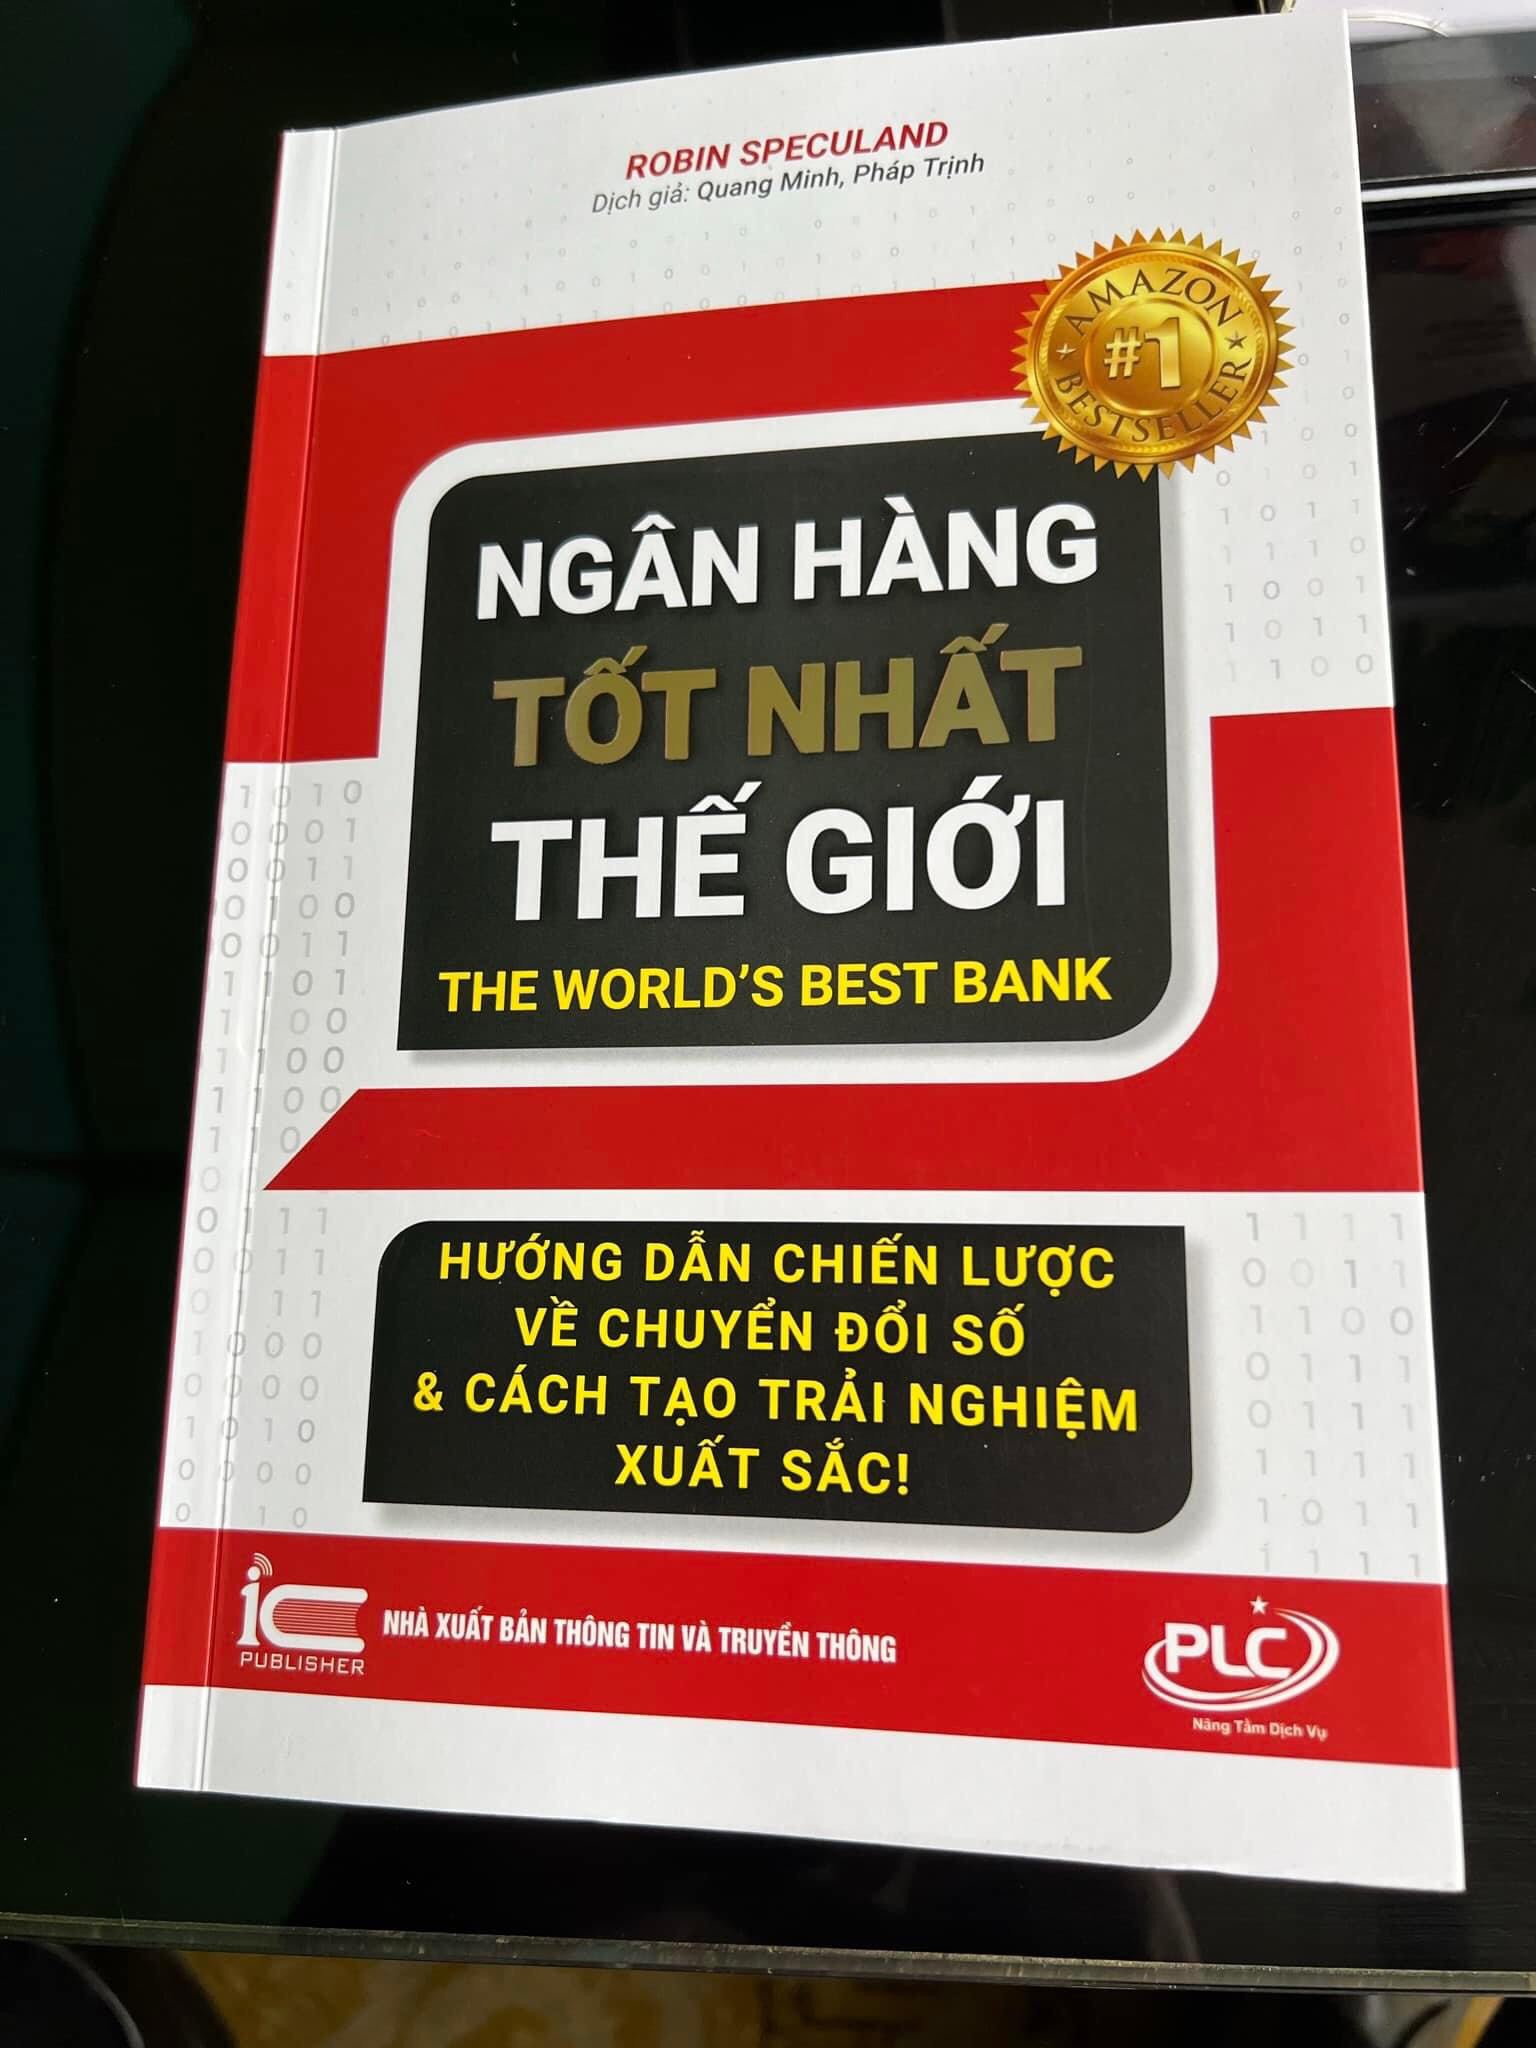 Ra mắt quyển sách “Ngân hàng tốt nhất thế giới” tác giả Robin Speculand